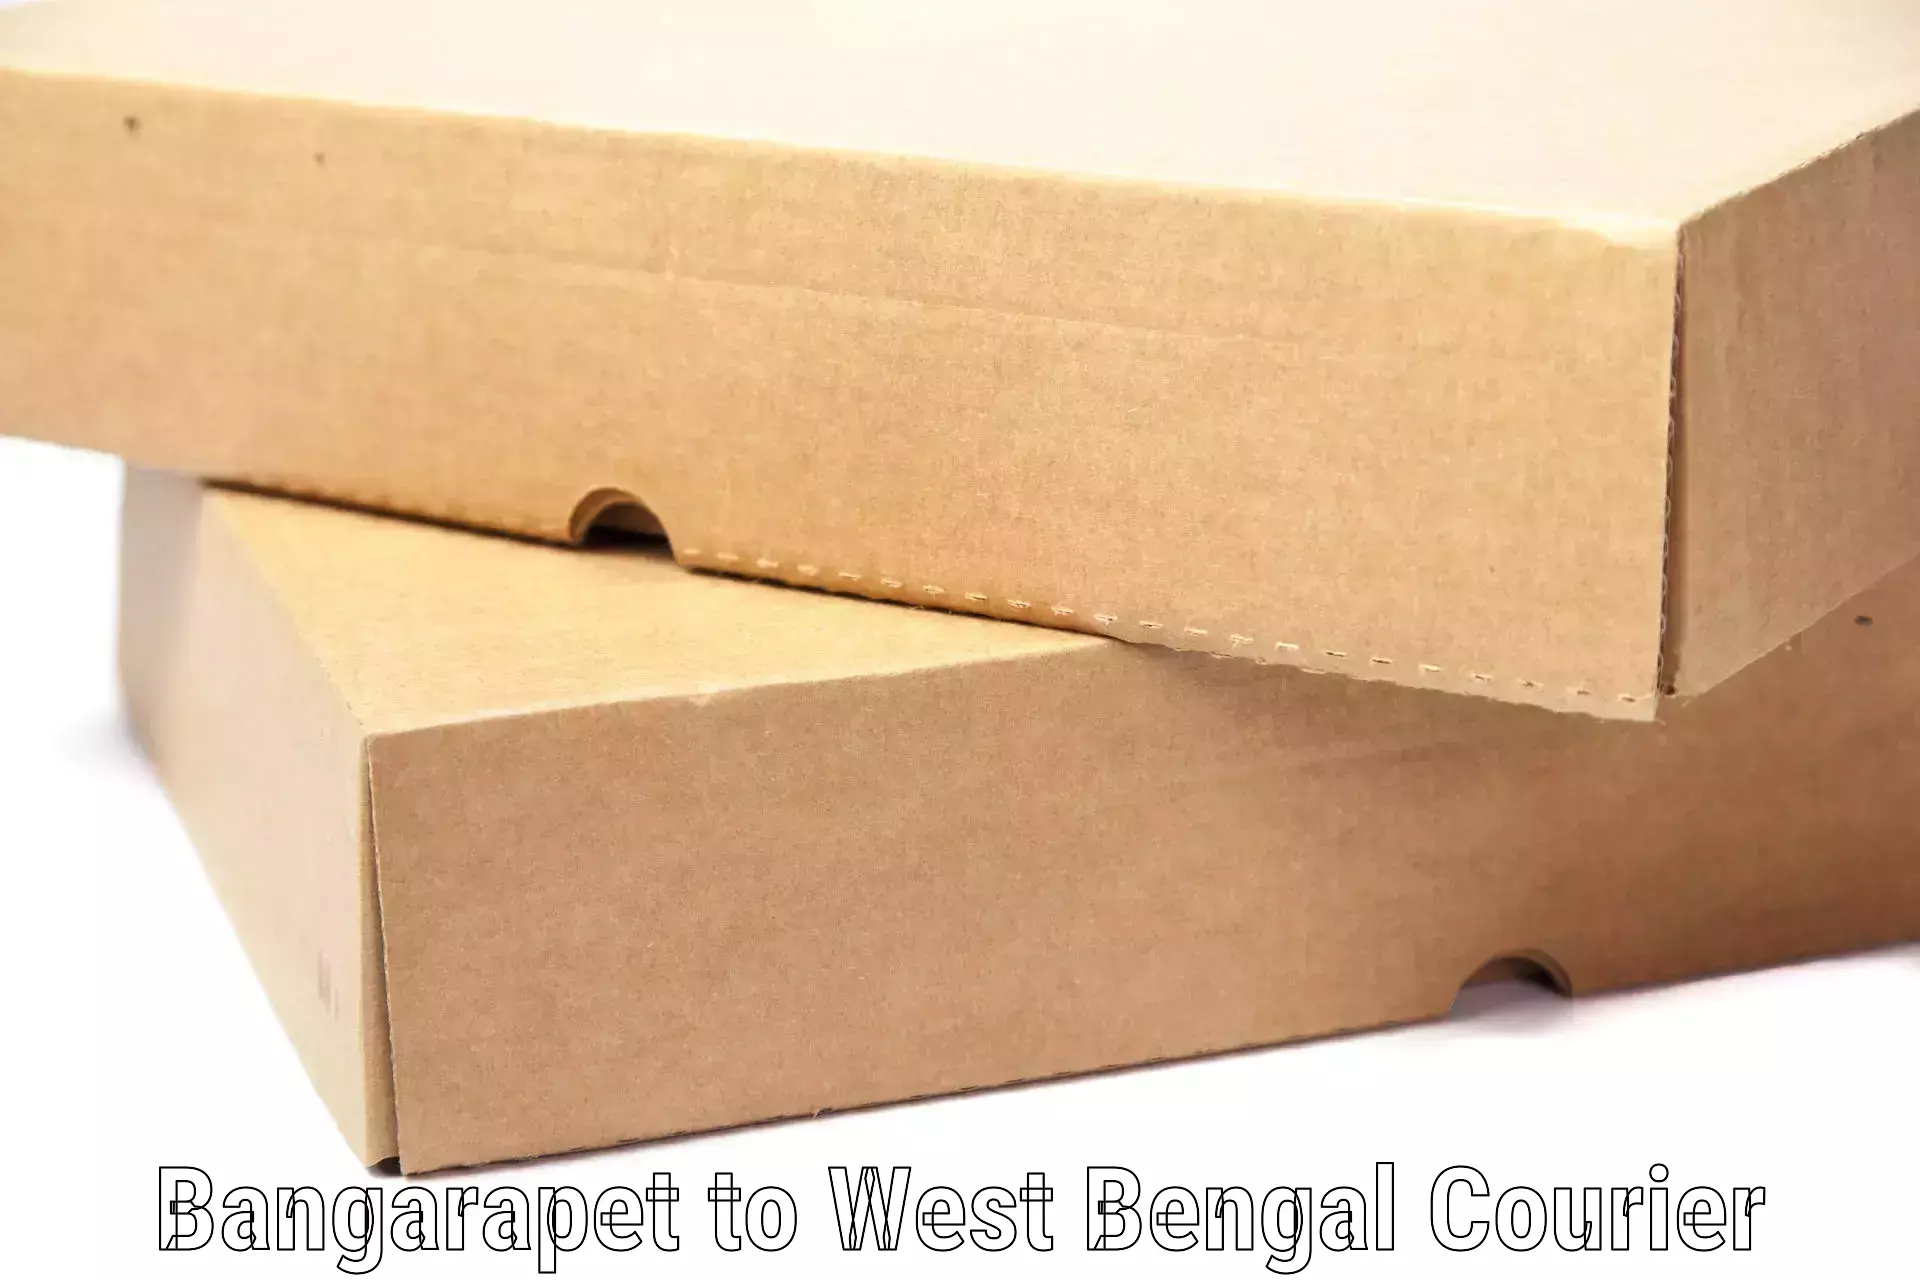 Luggage transit service Bangarapet to West Bengal